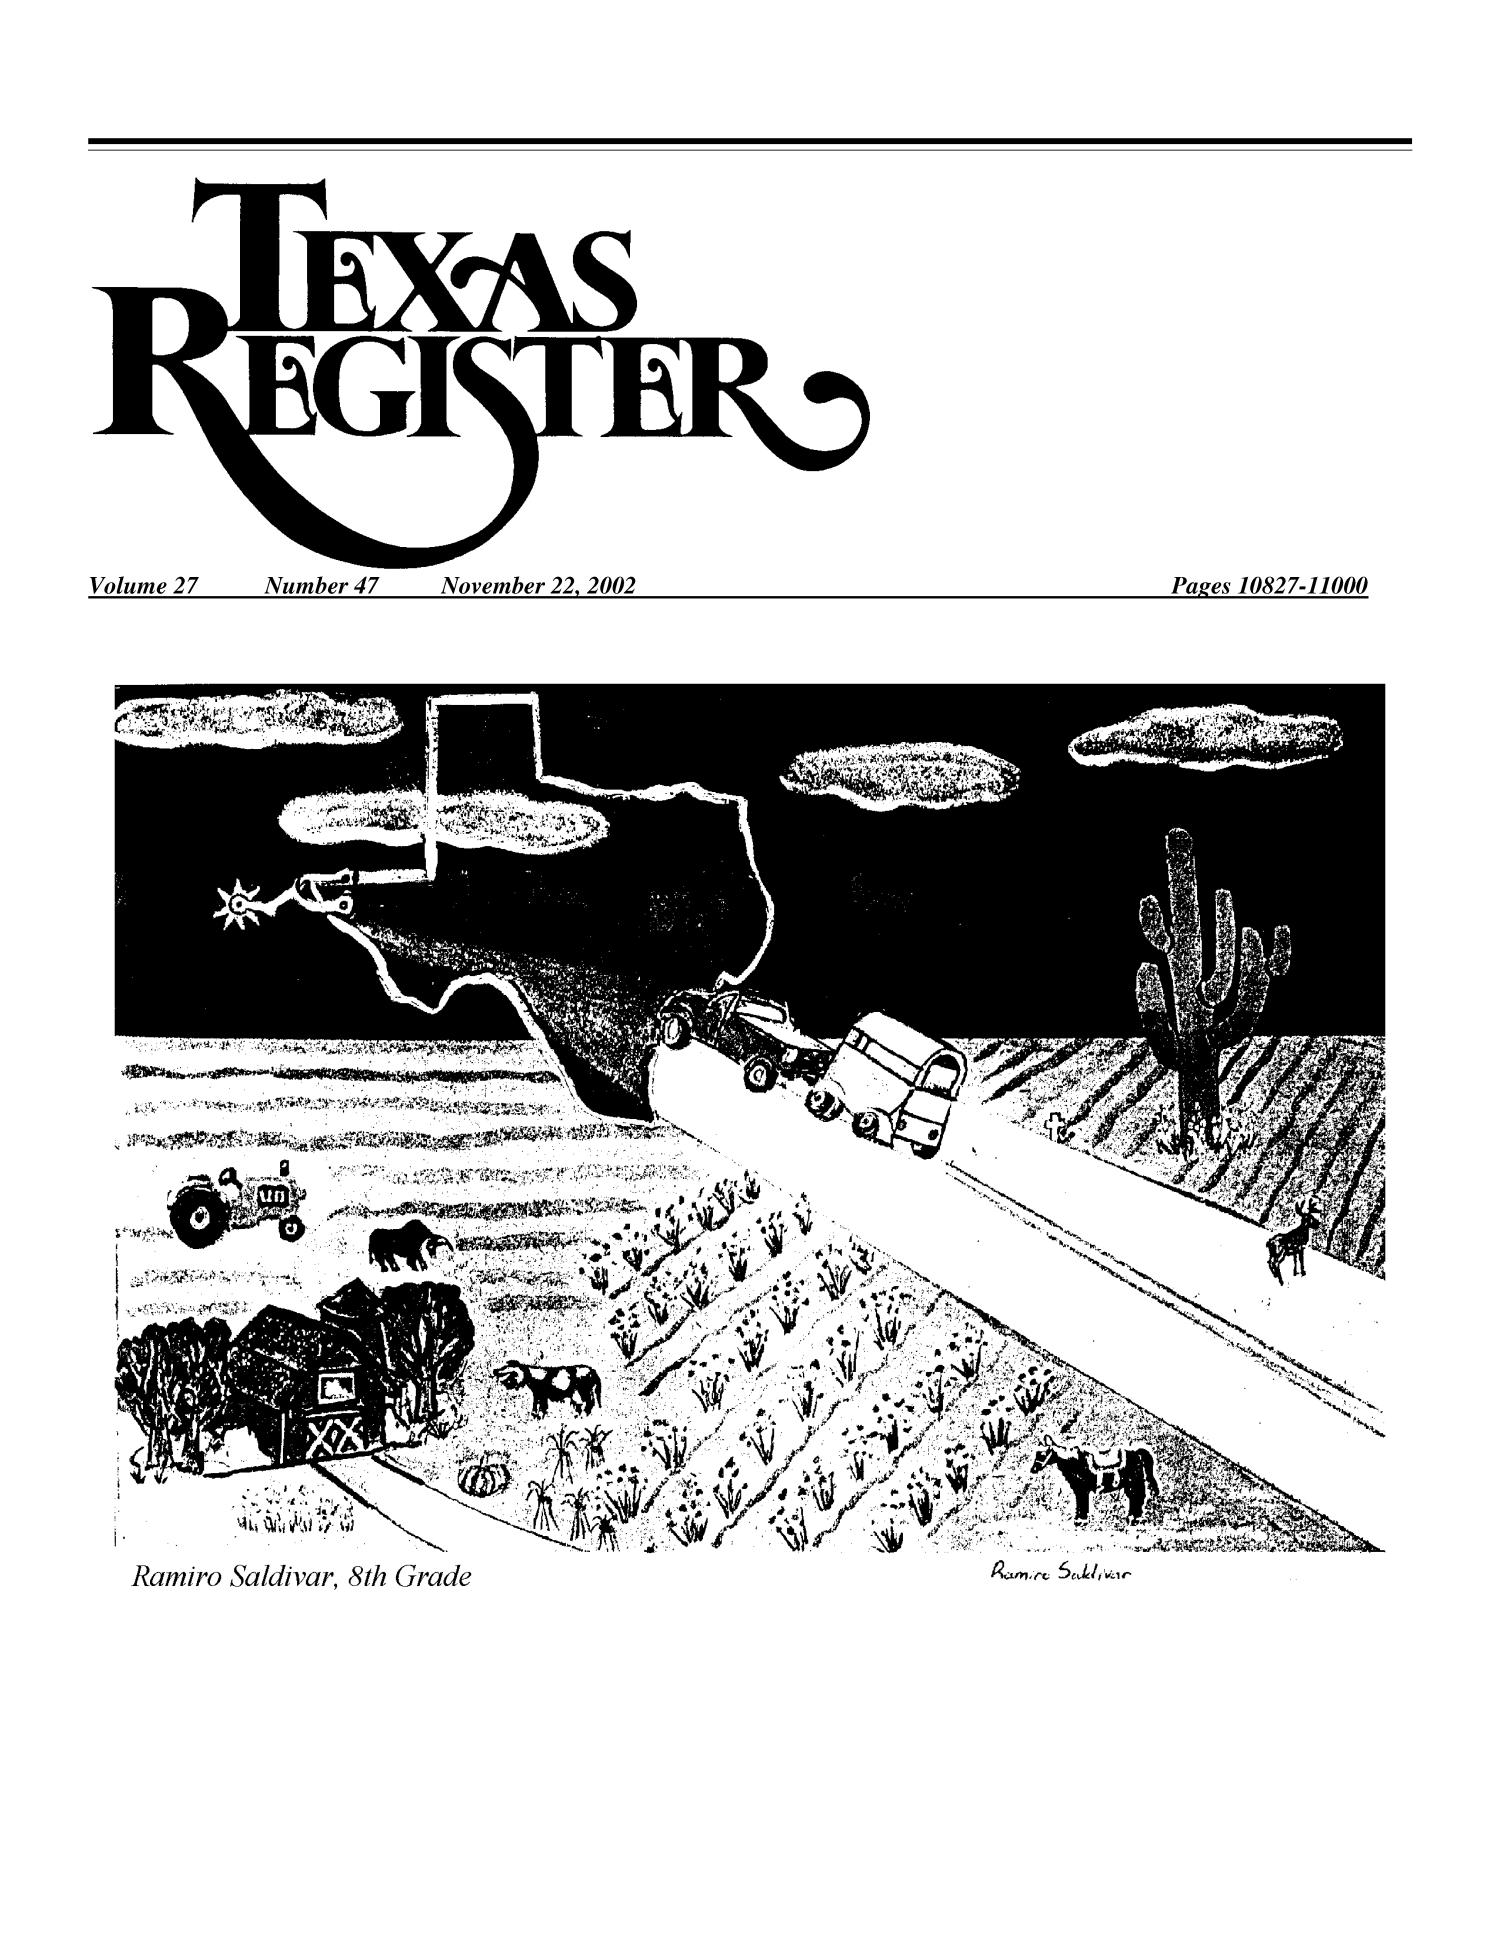 Texas Register, Volume 27, Number 47, Pages 10827-11000, November 22, 2002
                                                
                                                    10827
                                                